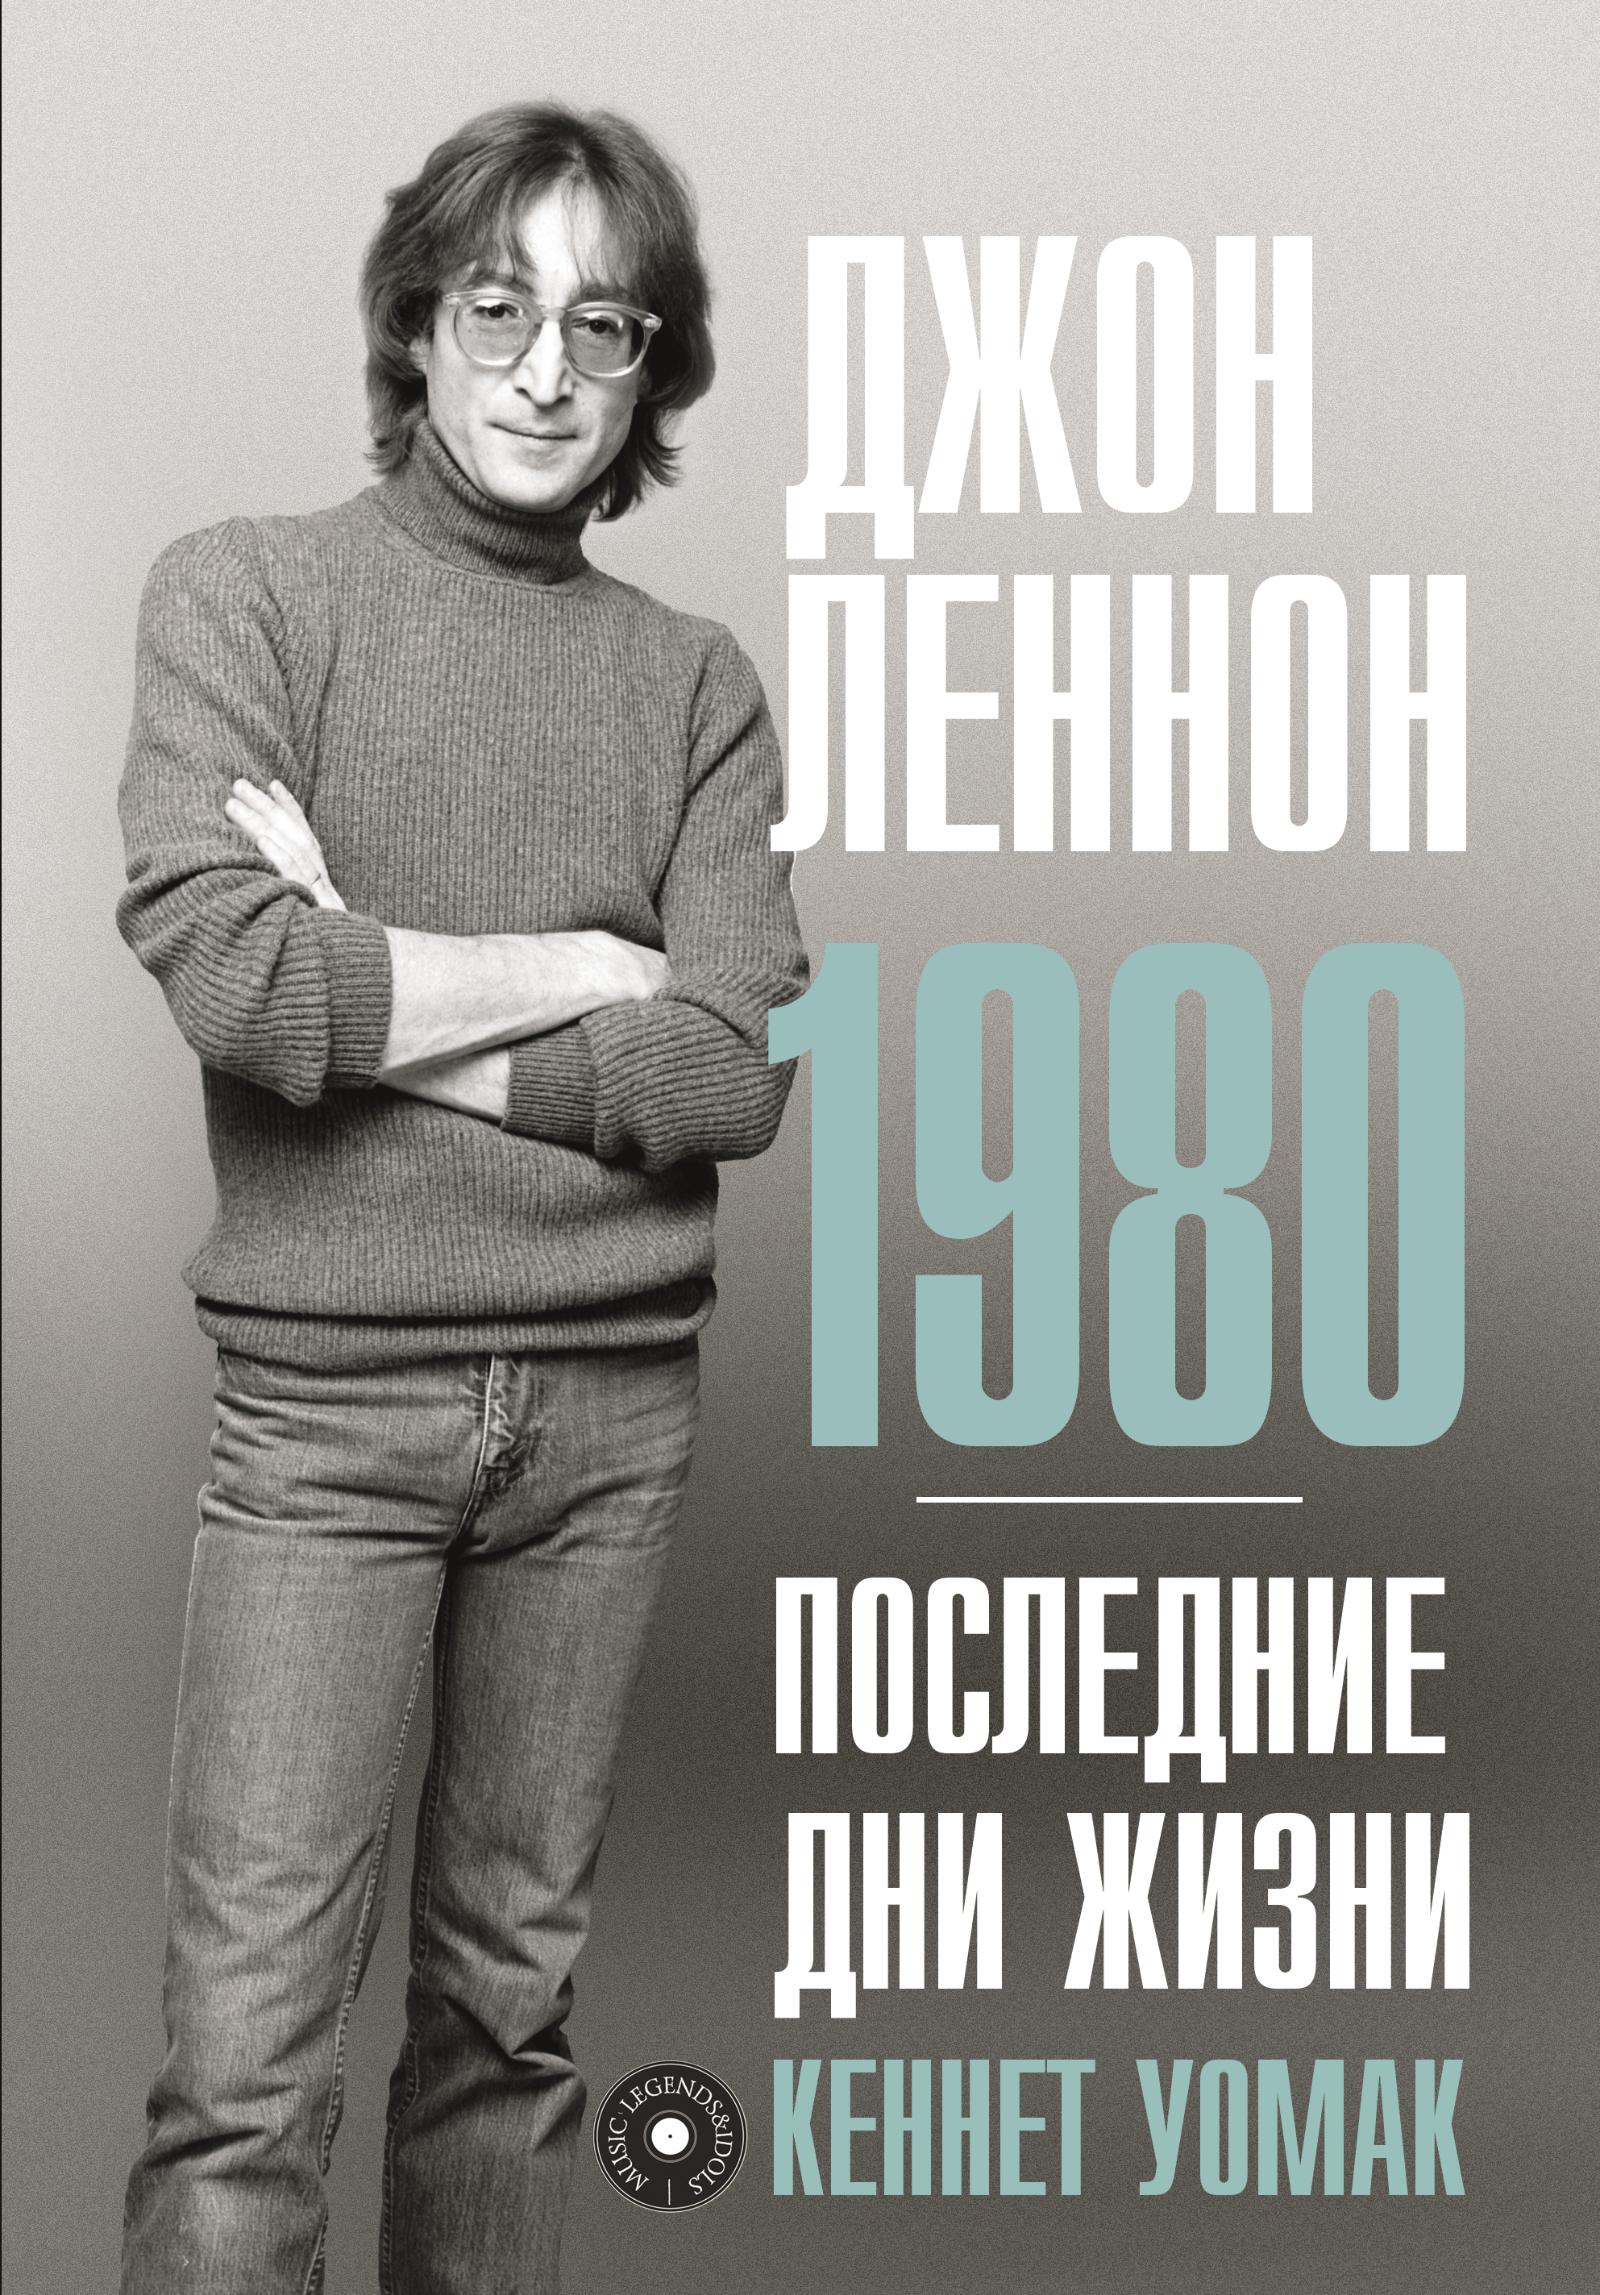 Кеннет Уомак, «Джон Леннон. 1980. Последние дни жизни»